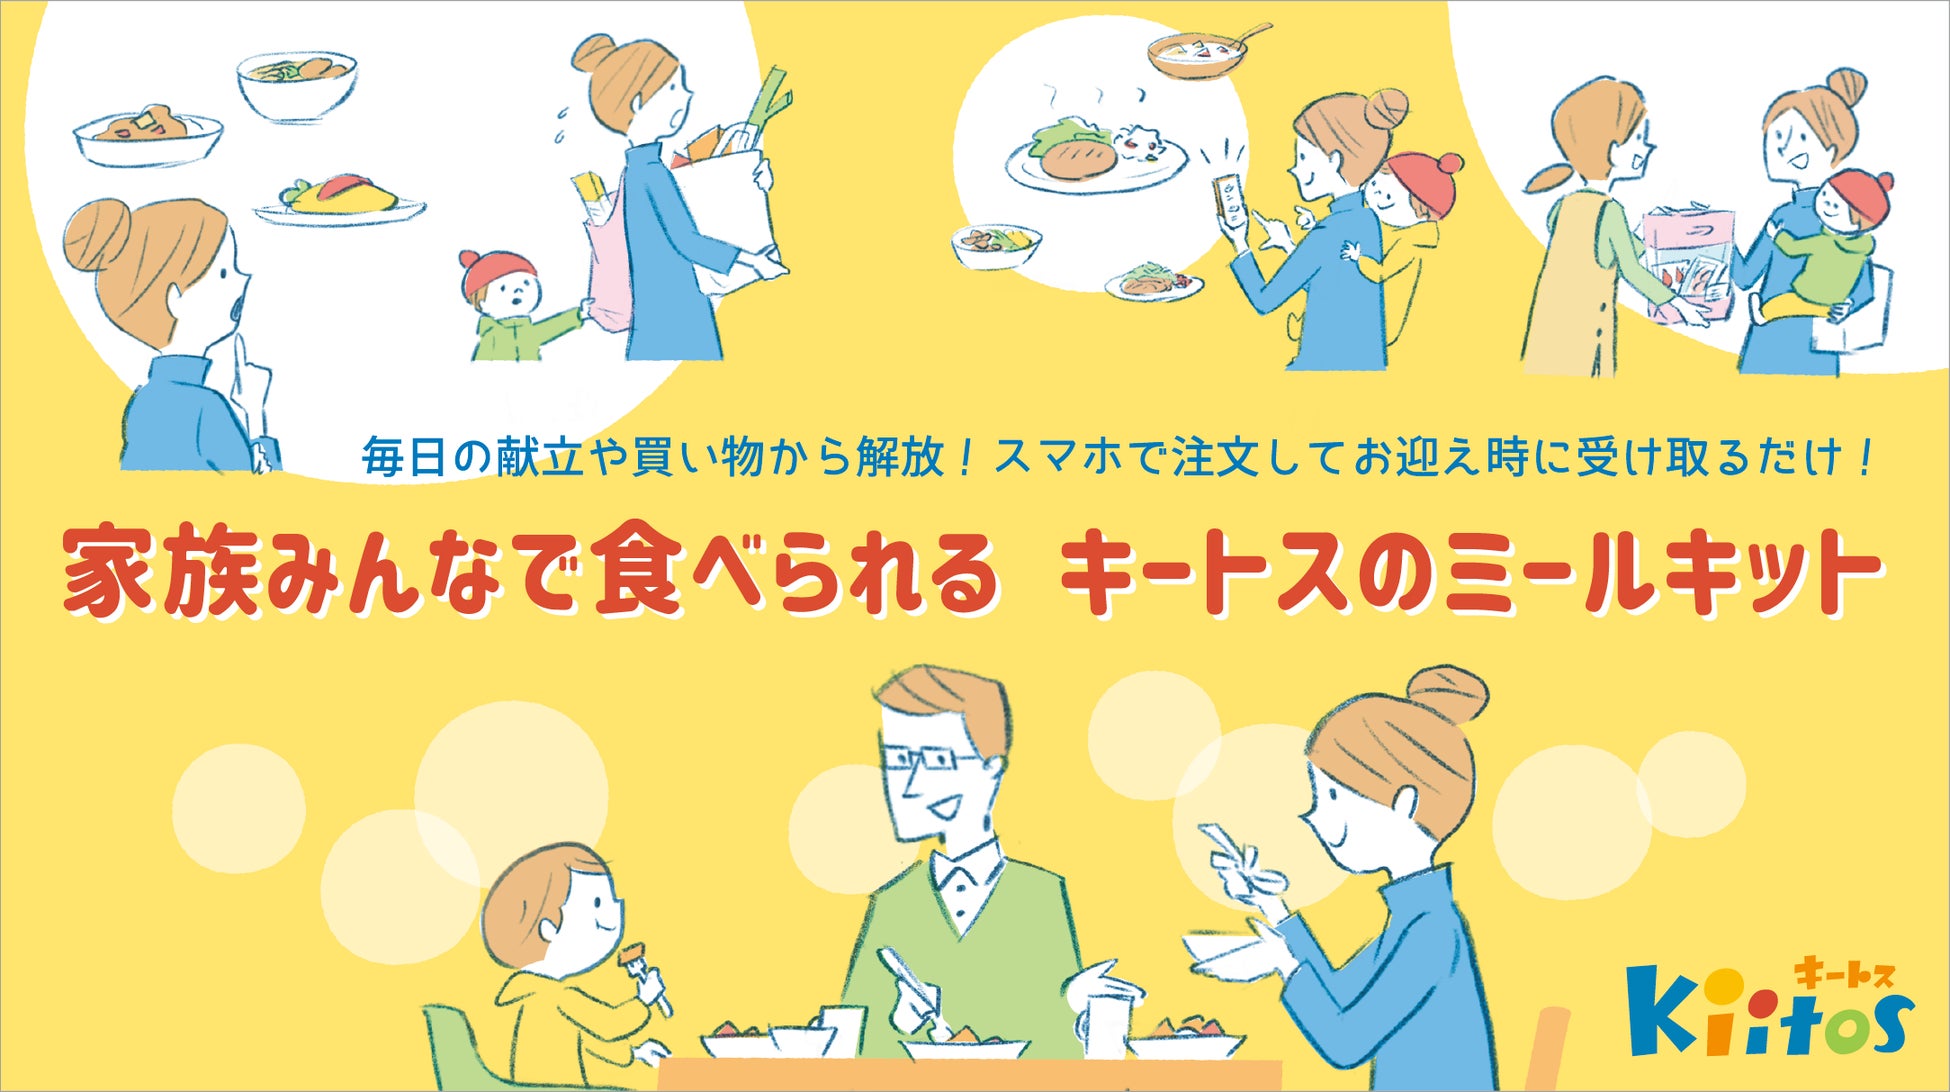 千葉県認可保育園「キートス」で子どものお迎え時に購入できる「ミールキット」の提供を開始